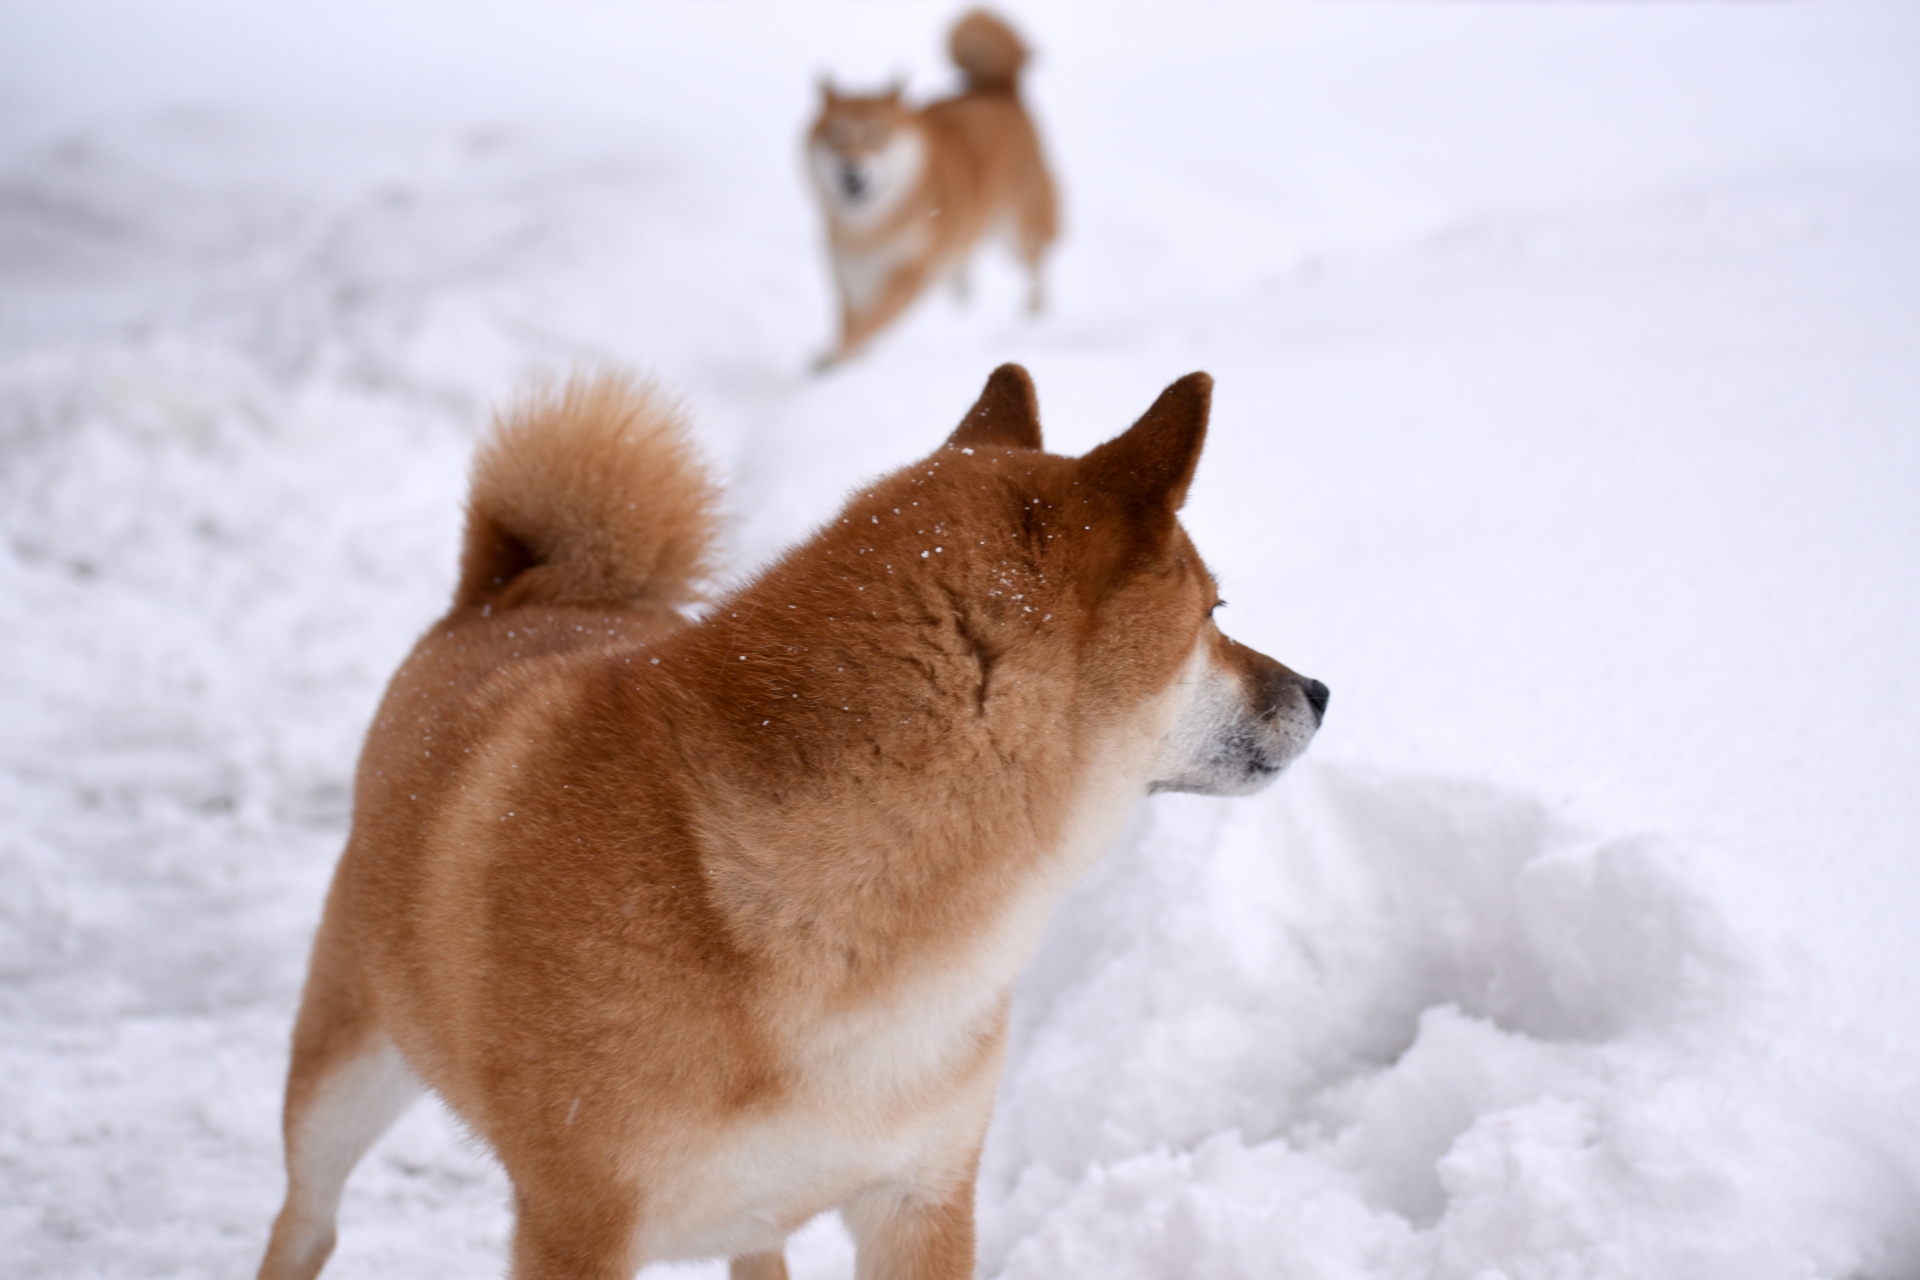 雪の中で遊ぶ犬